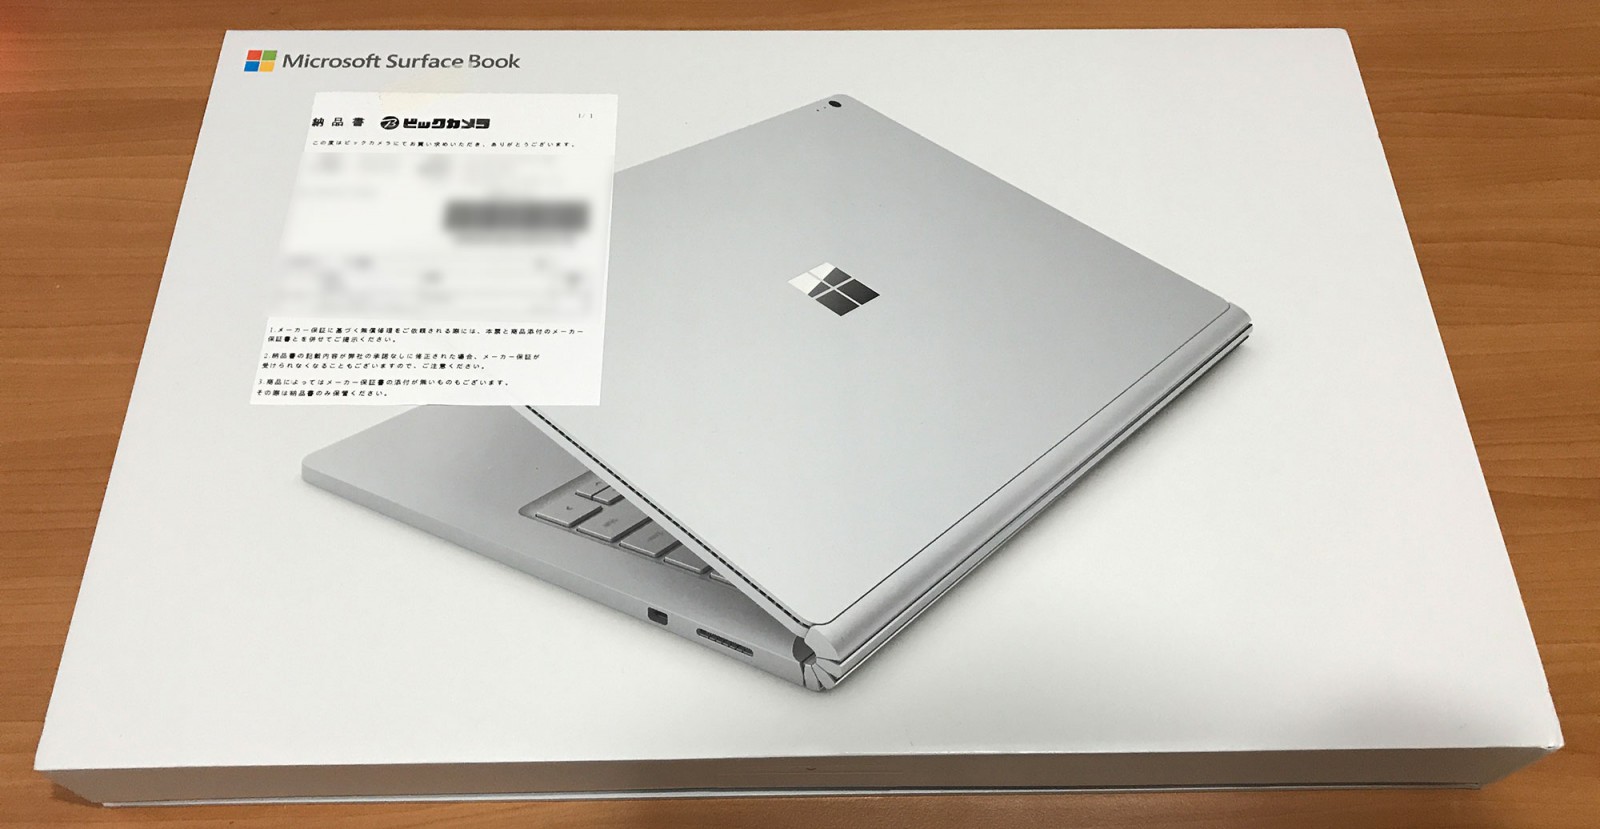 Surface Book パフォーマンス ベース搭載モデル ジャック品